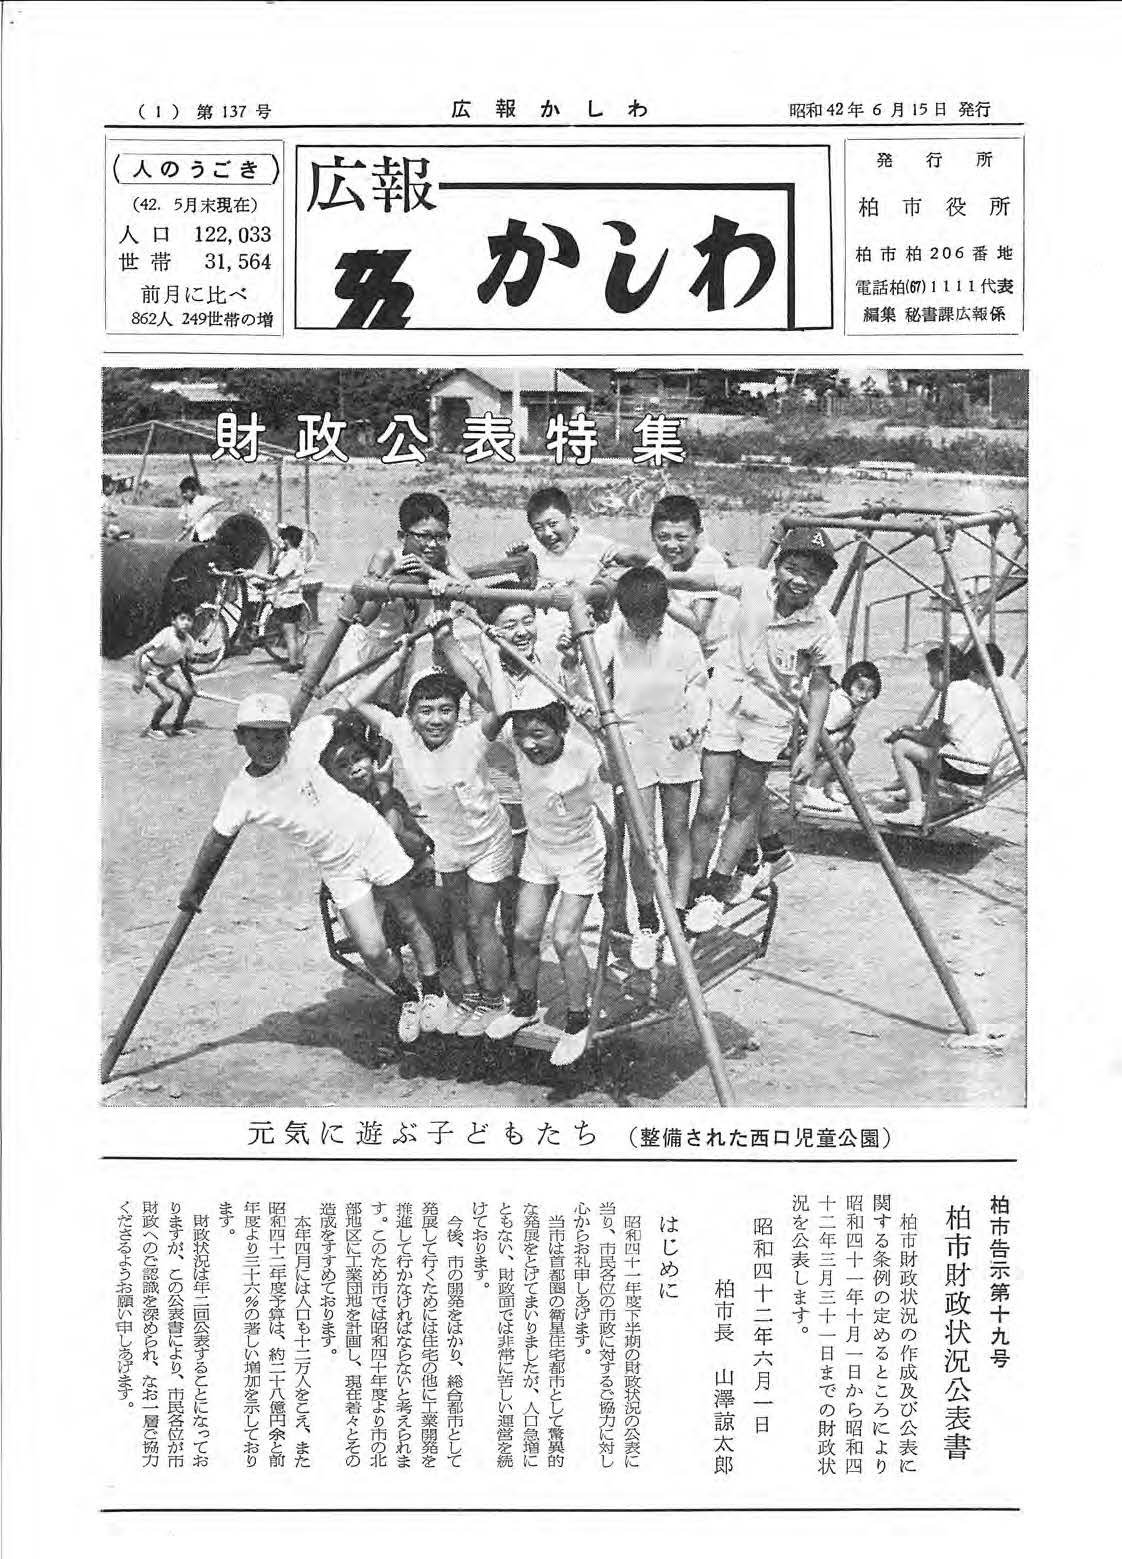 広報かしわ　昭和42年6月15日発行　137号